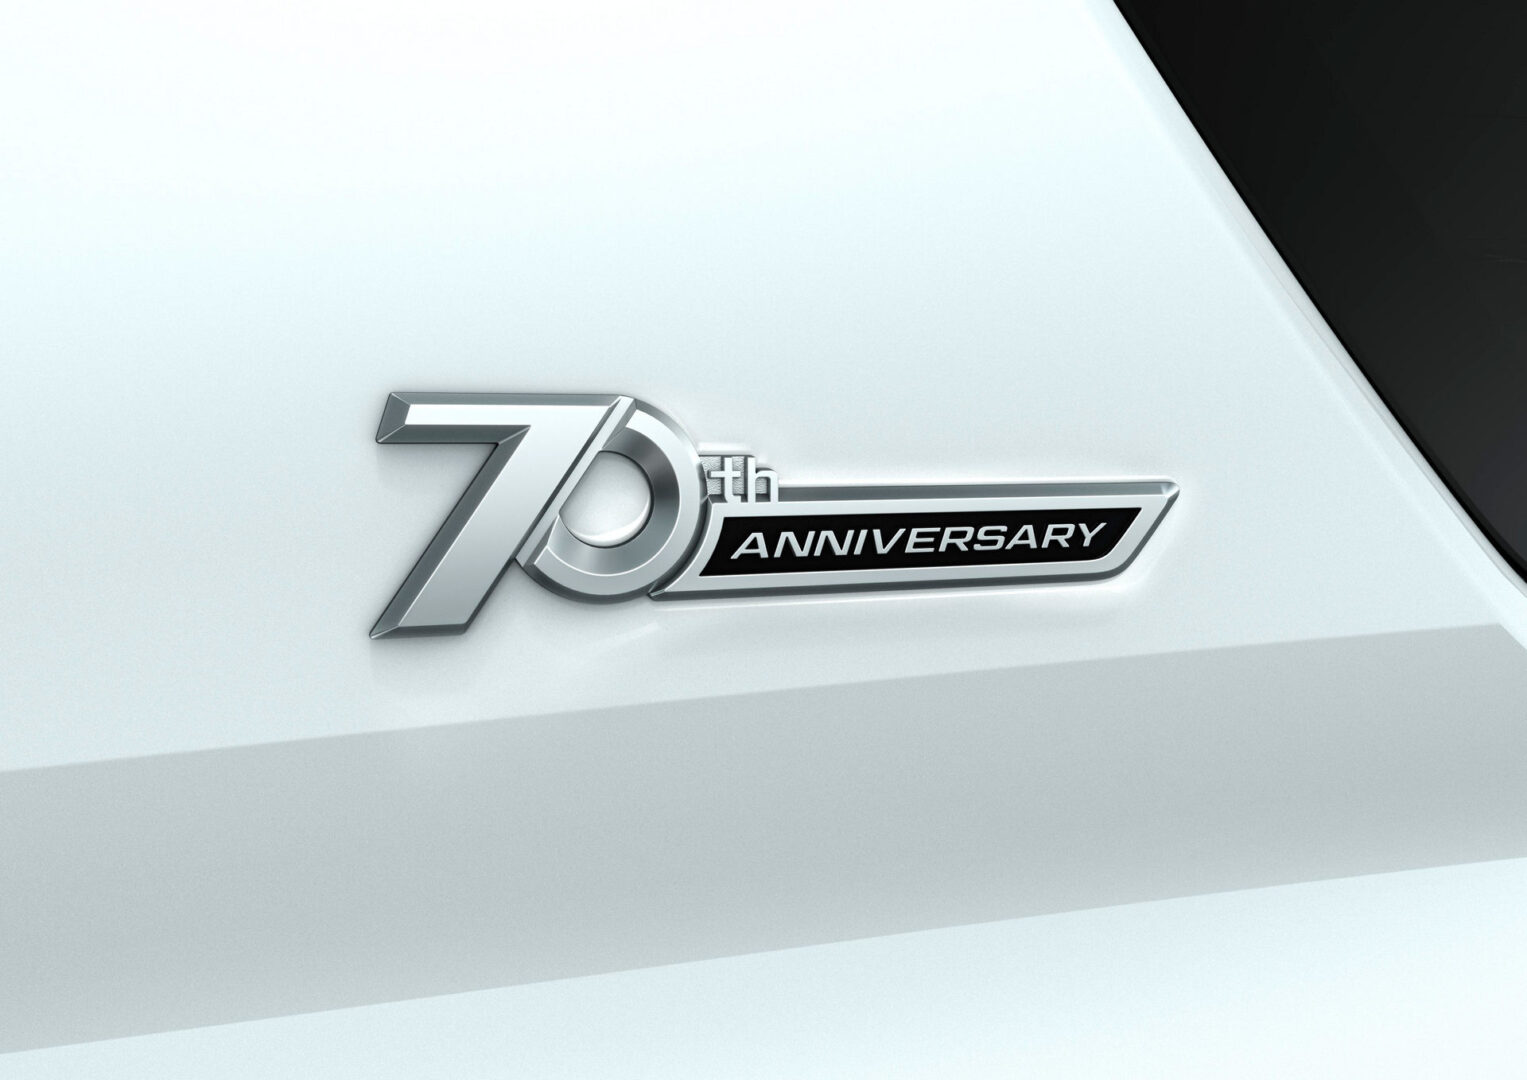 تويوتا برادو إصدار الذكرى السبعين تنطلق رسمياً 29